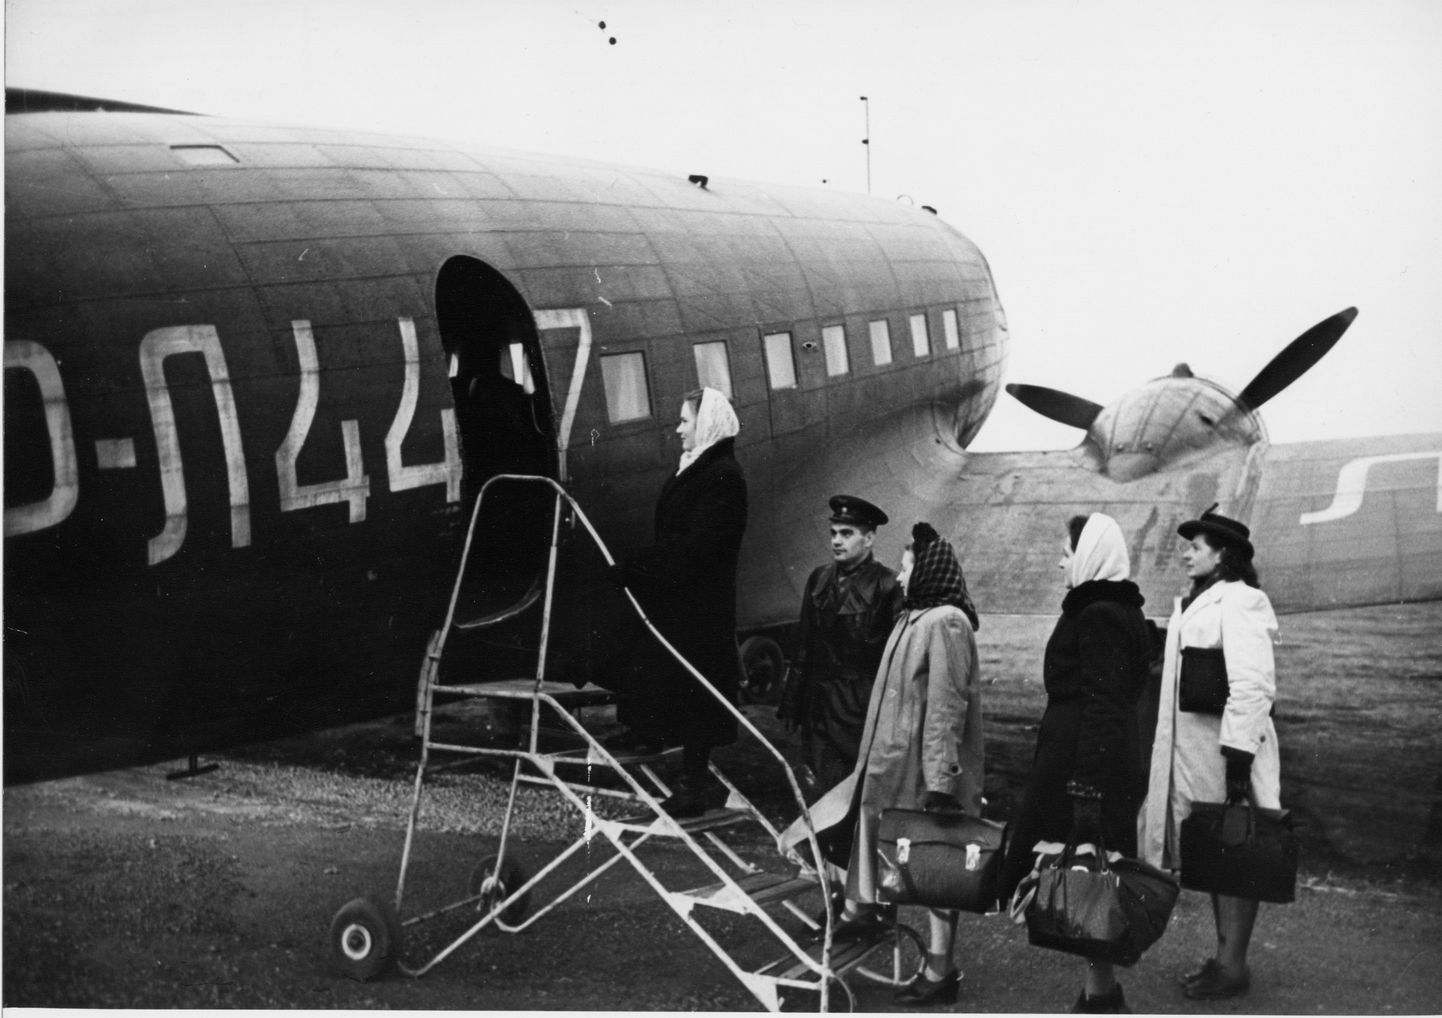 PÄRAST SÕDA: Esimene suurem liinilennuk, mis pärast teist maailmasõda Kingissepa ja Tallinna vahet sõitma hakkas, oli Li-2.
HERMAN GRÜNFELD